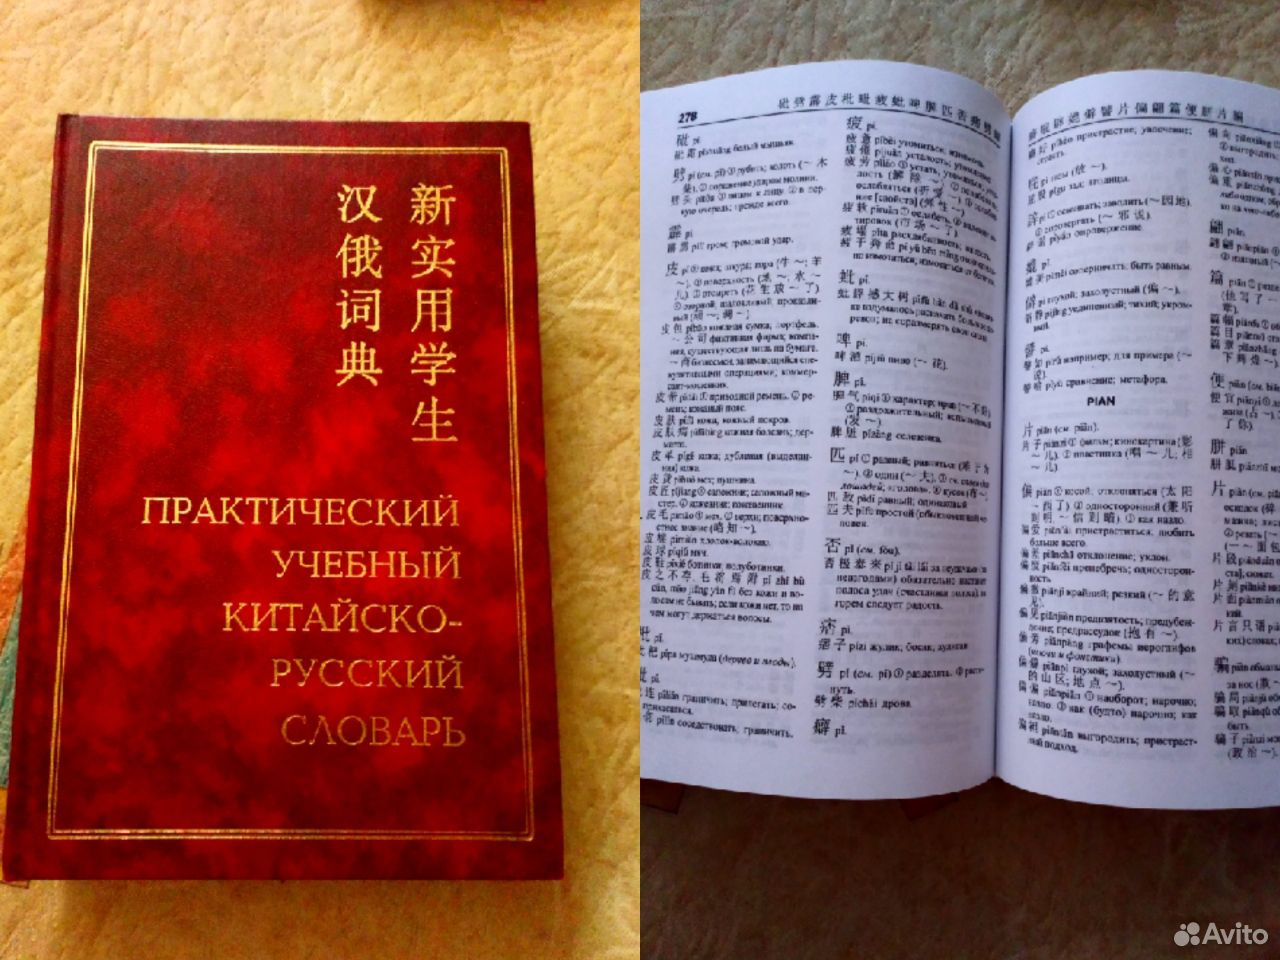 Перевод с китайского на русском по фото